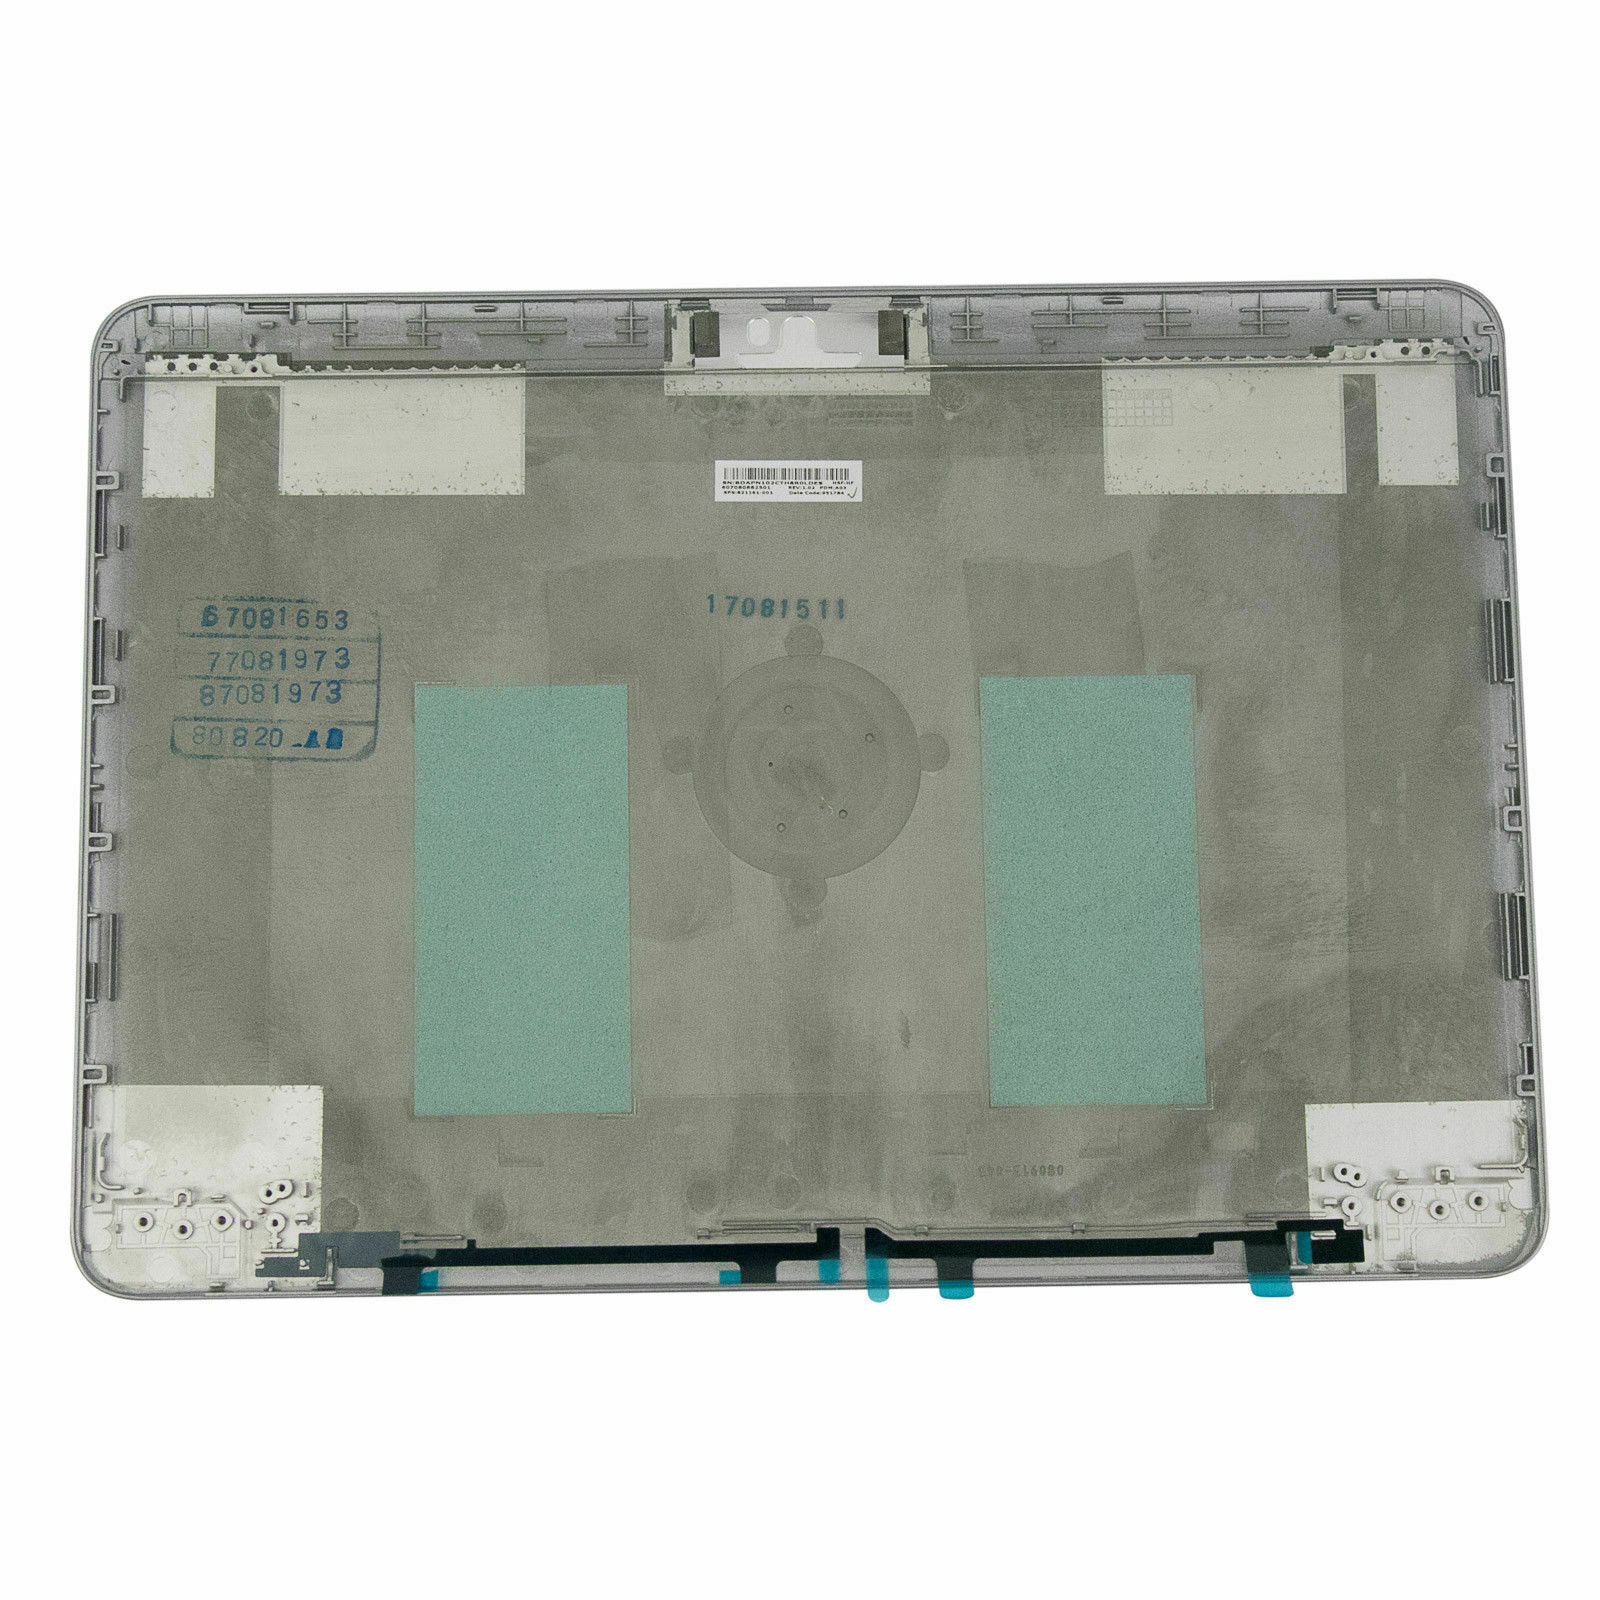 Carcasa trasera HP EliteBook 840 G3 LCD Tapa superior Tapa trasera 821161-001